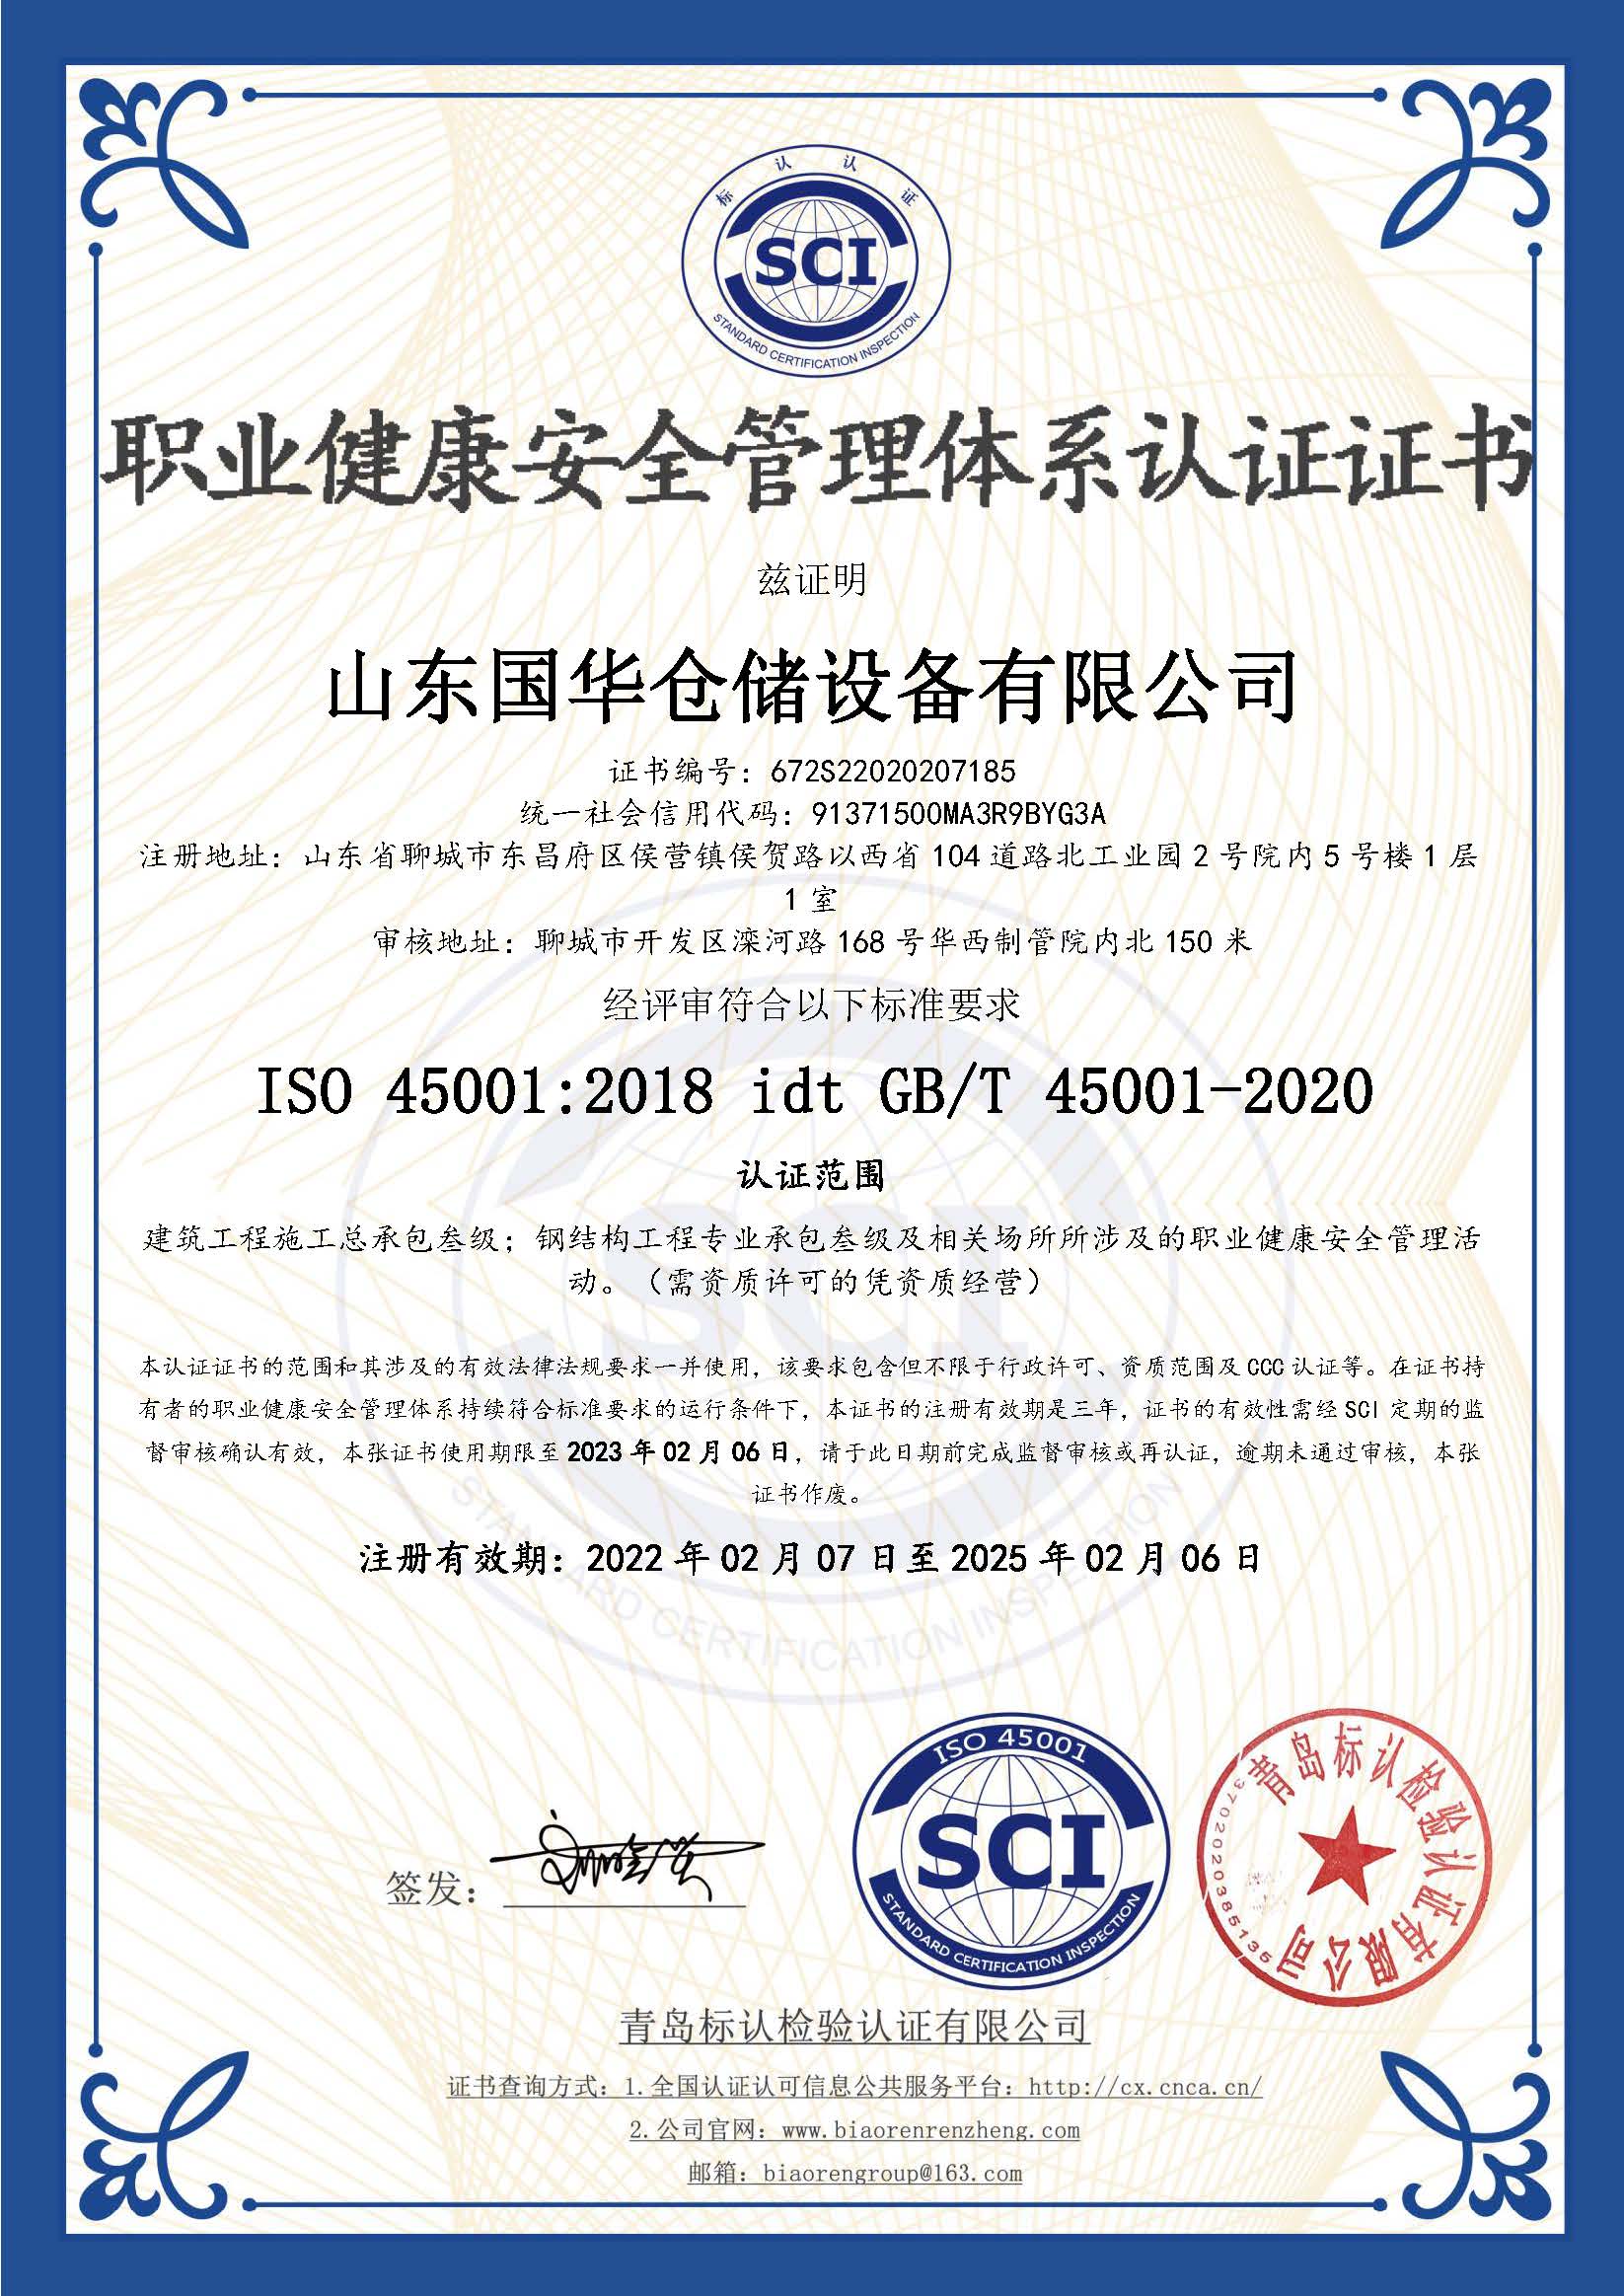 天水钢板仓职业健康安全管理体系认证证书